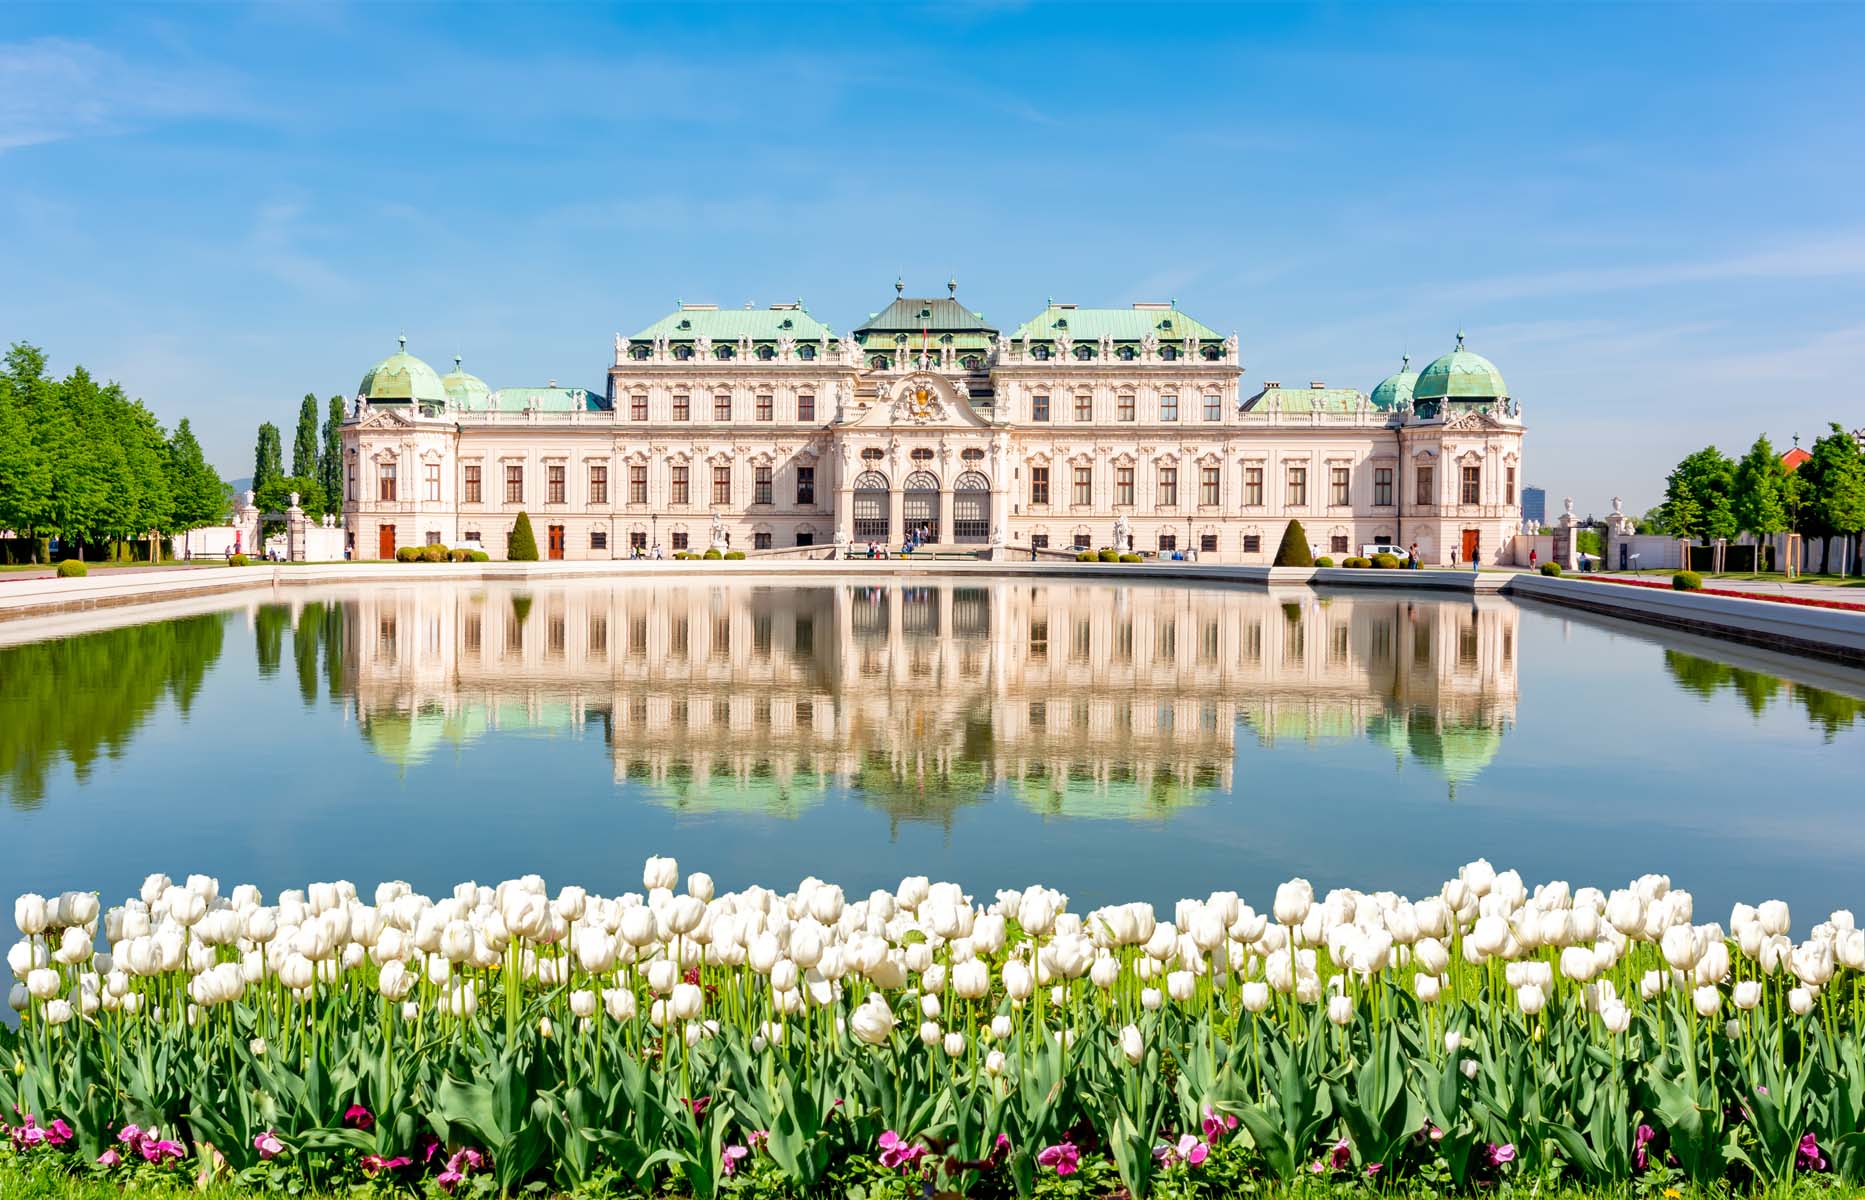 Upper,Belvedere,Palace,And,Gardens,In,Spring,,Vienna,,Austria